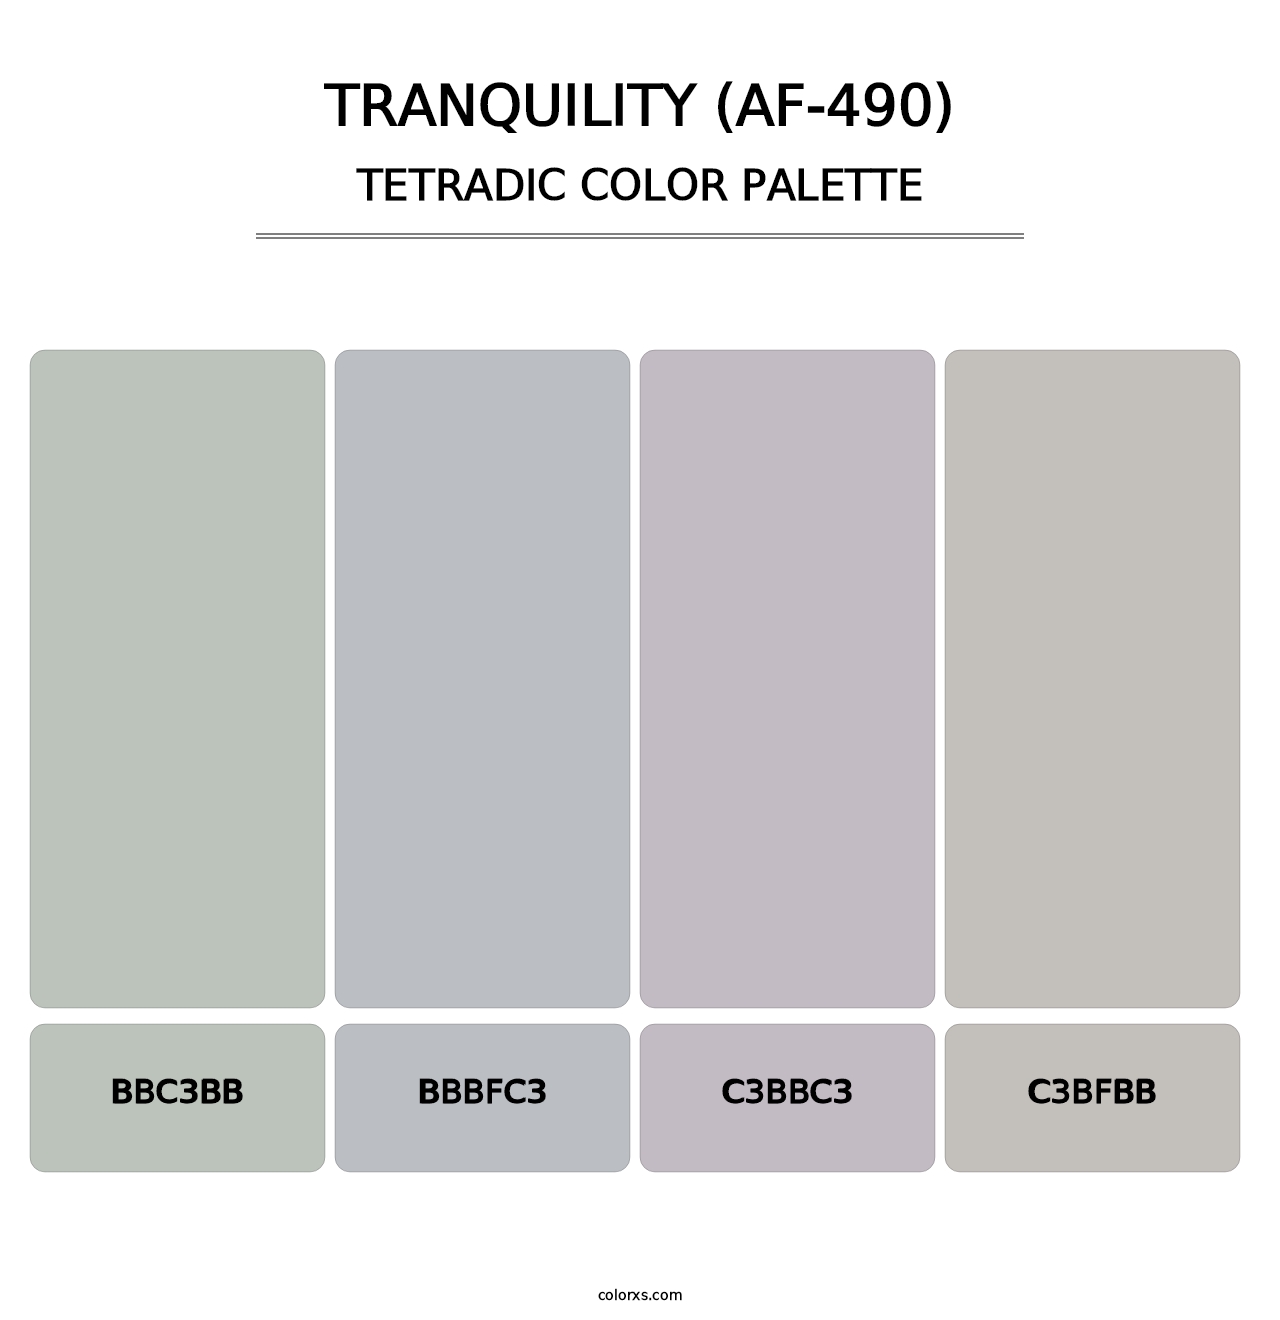 Tranquility (AF-490) - Tetradic Color Palette